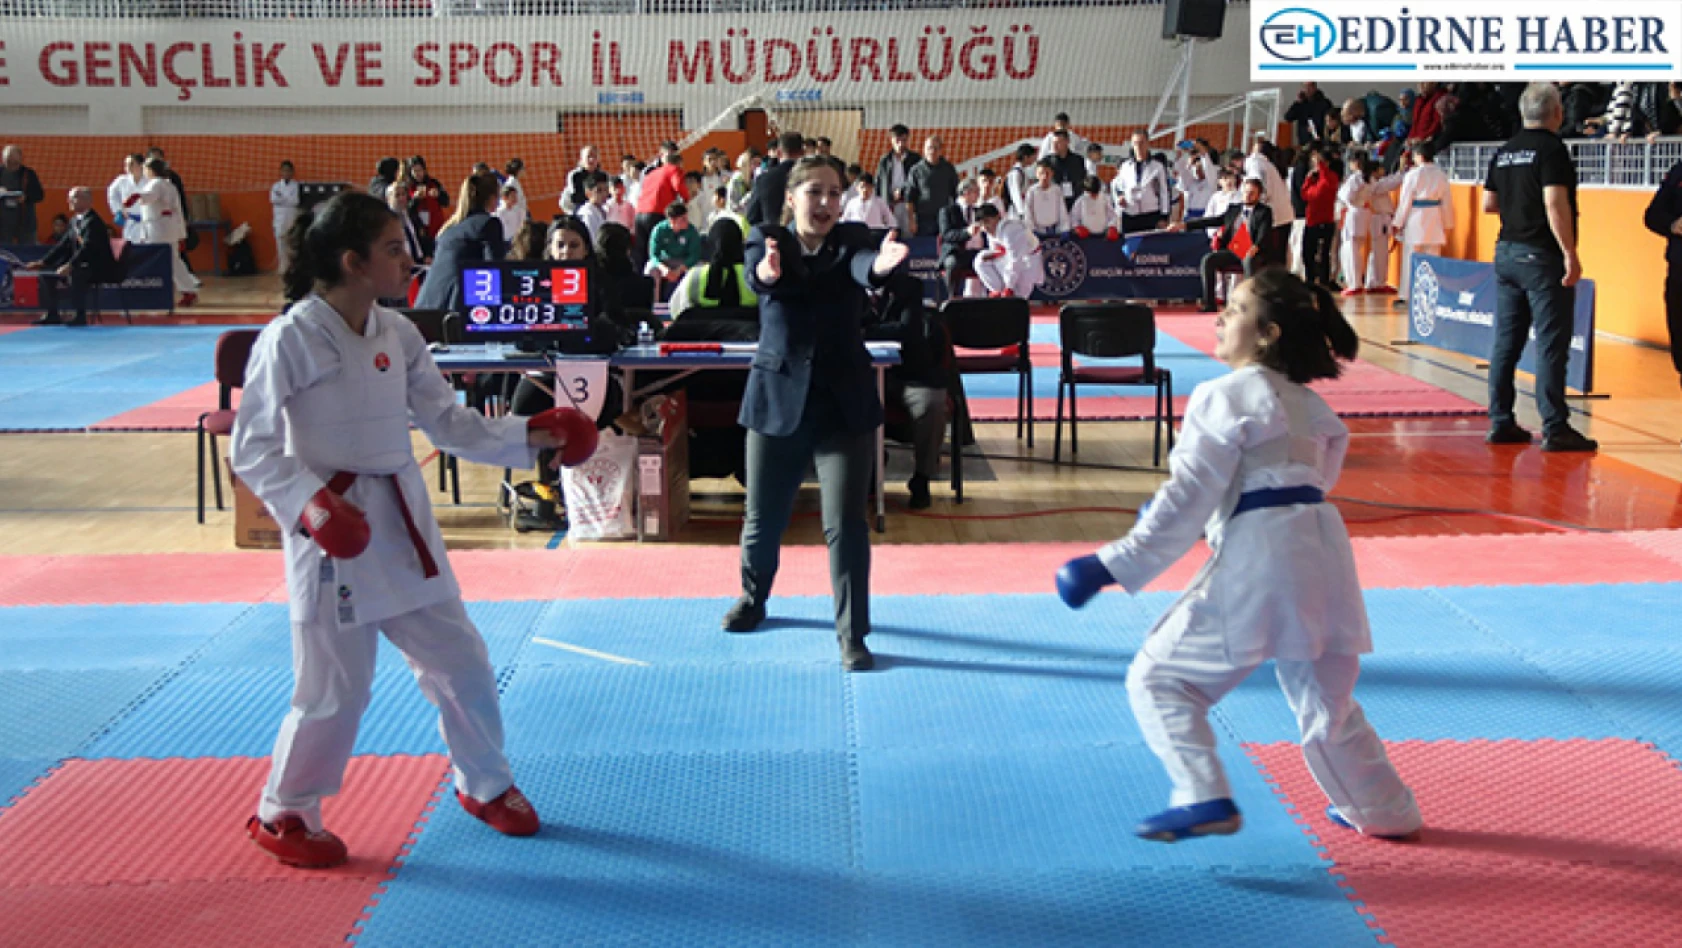 Trakya Karate Ligi'nin 3. etap müsabakaları Edirne'de gerçekleştirildi